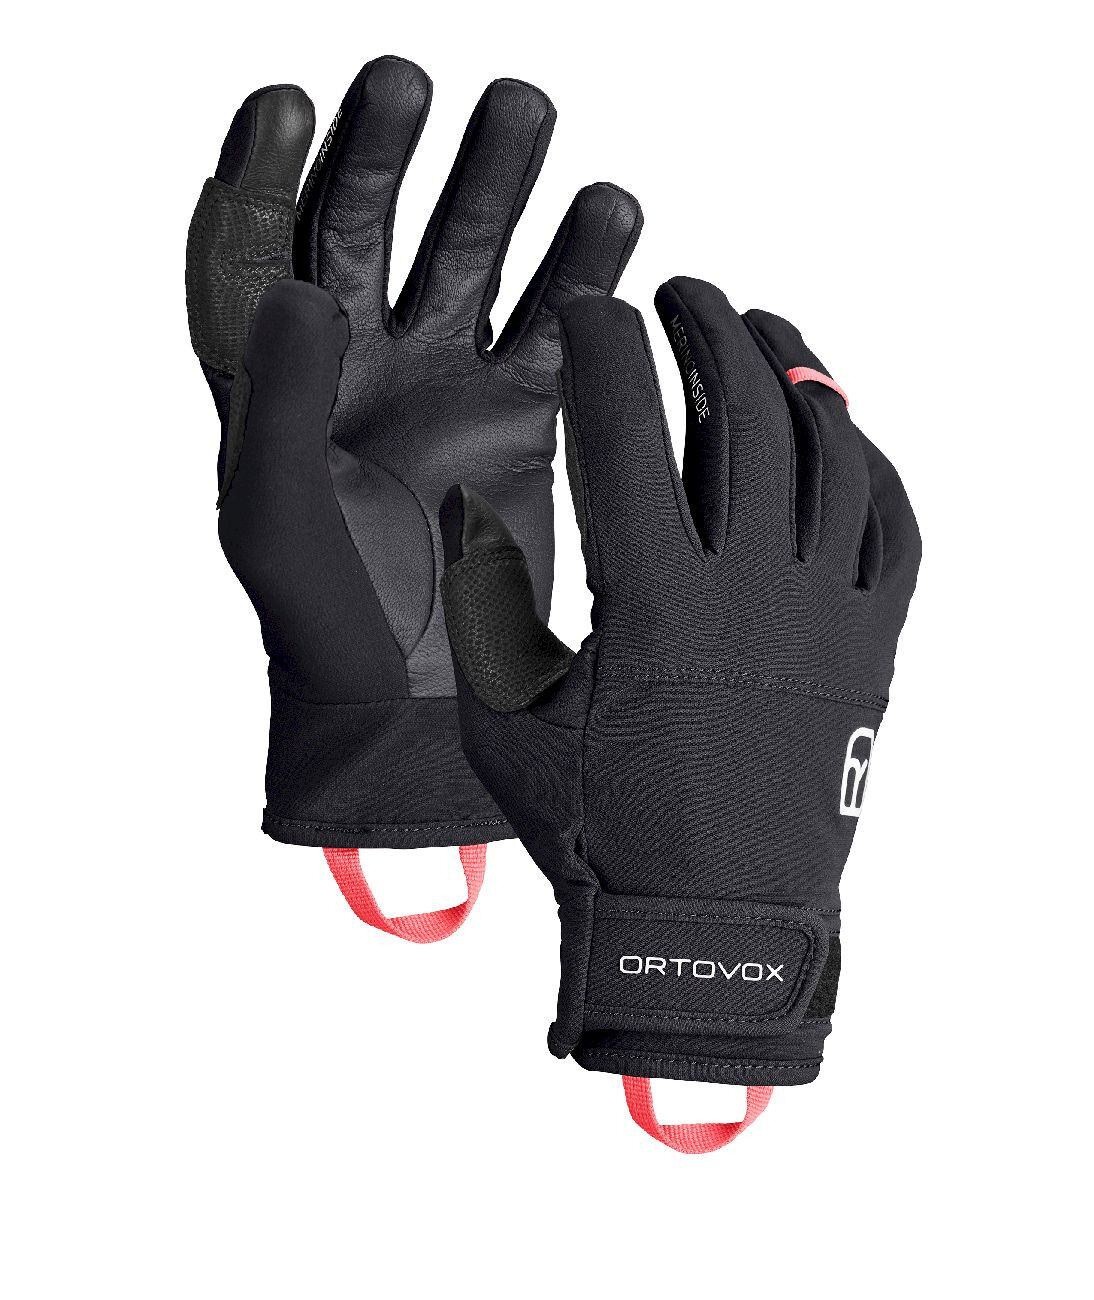 Ortovox Tour Light Glove - Ski gloves - Women's